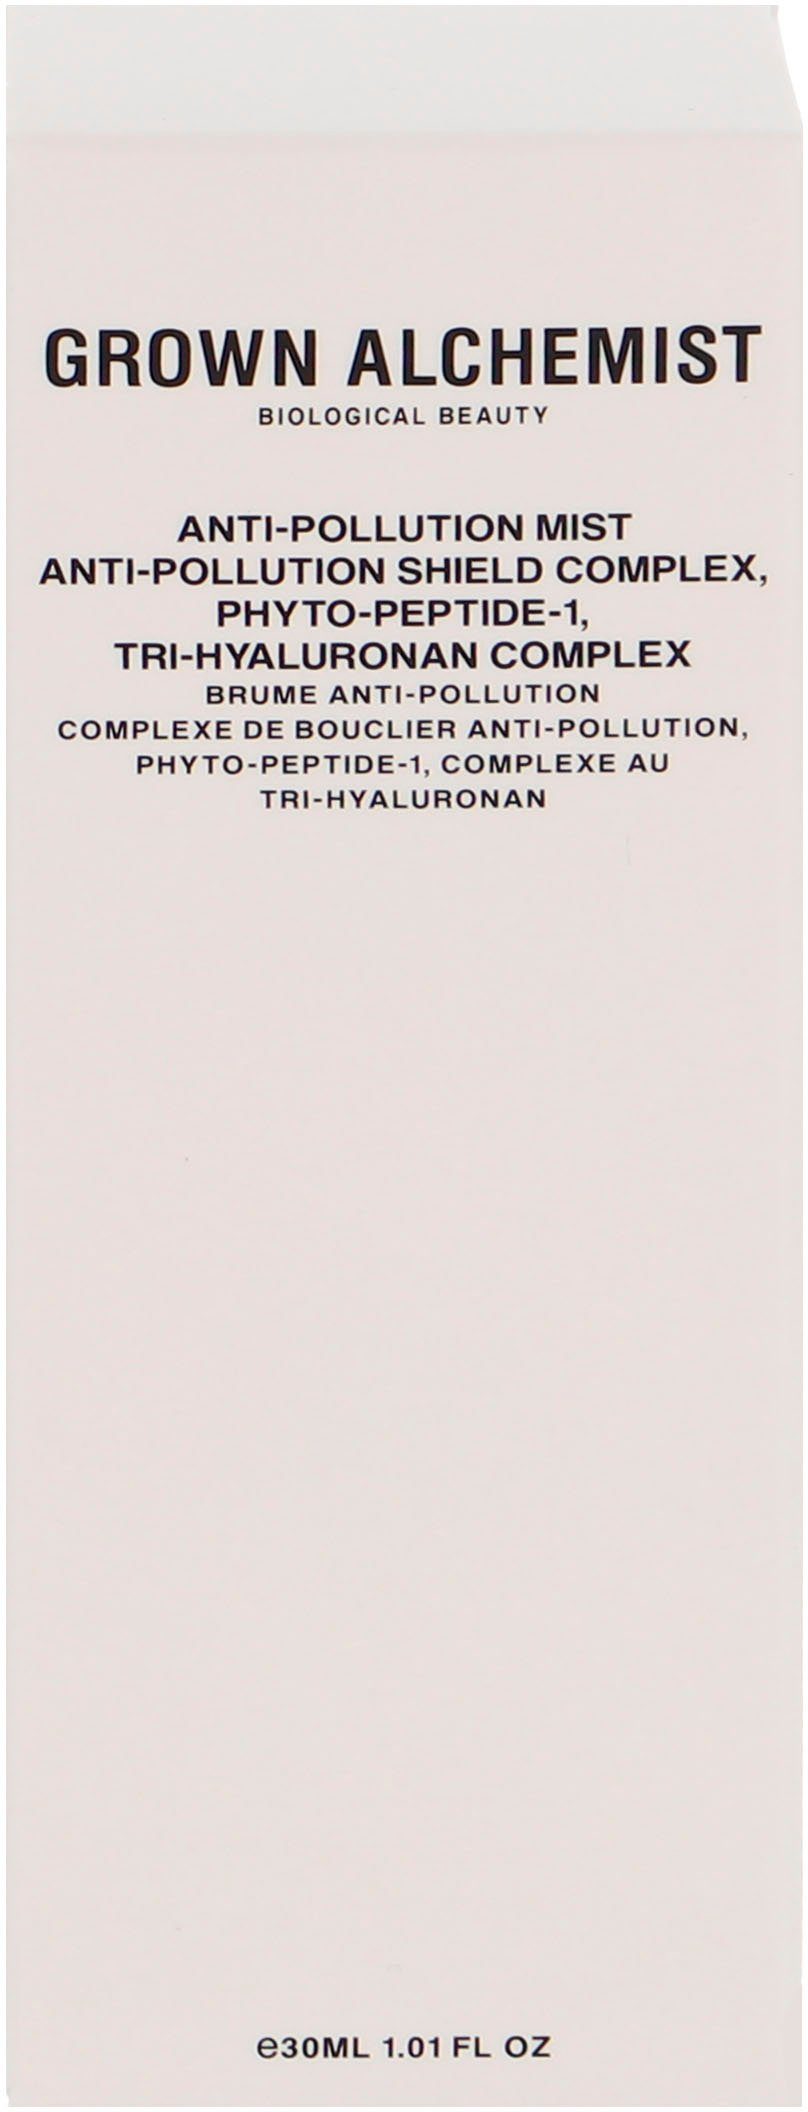 Anti-Pollution ALCHEMIST Shield Complex, Phyto-Peptide-1, Gesichtsspray Mist, Anti-Pollution GROWN Tri-Hyaluronan